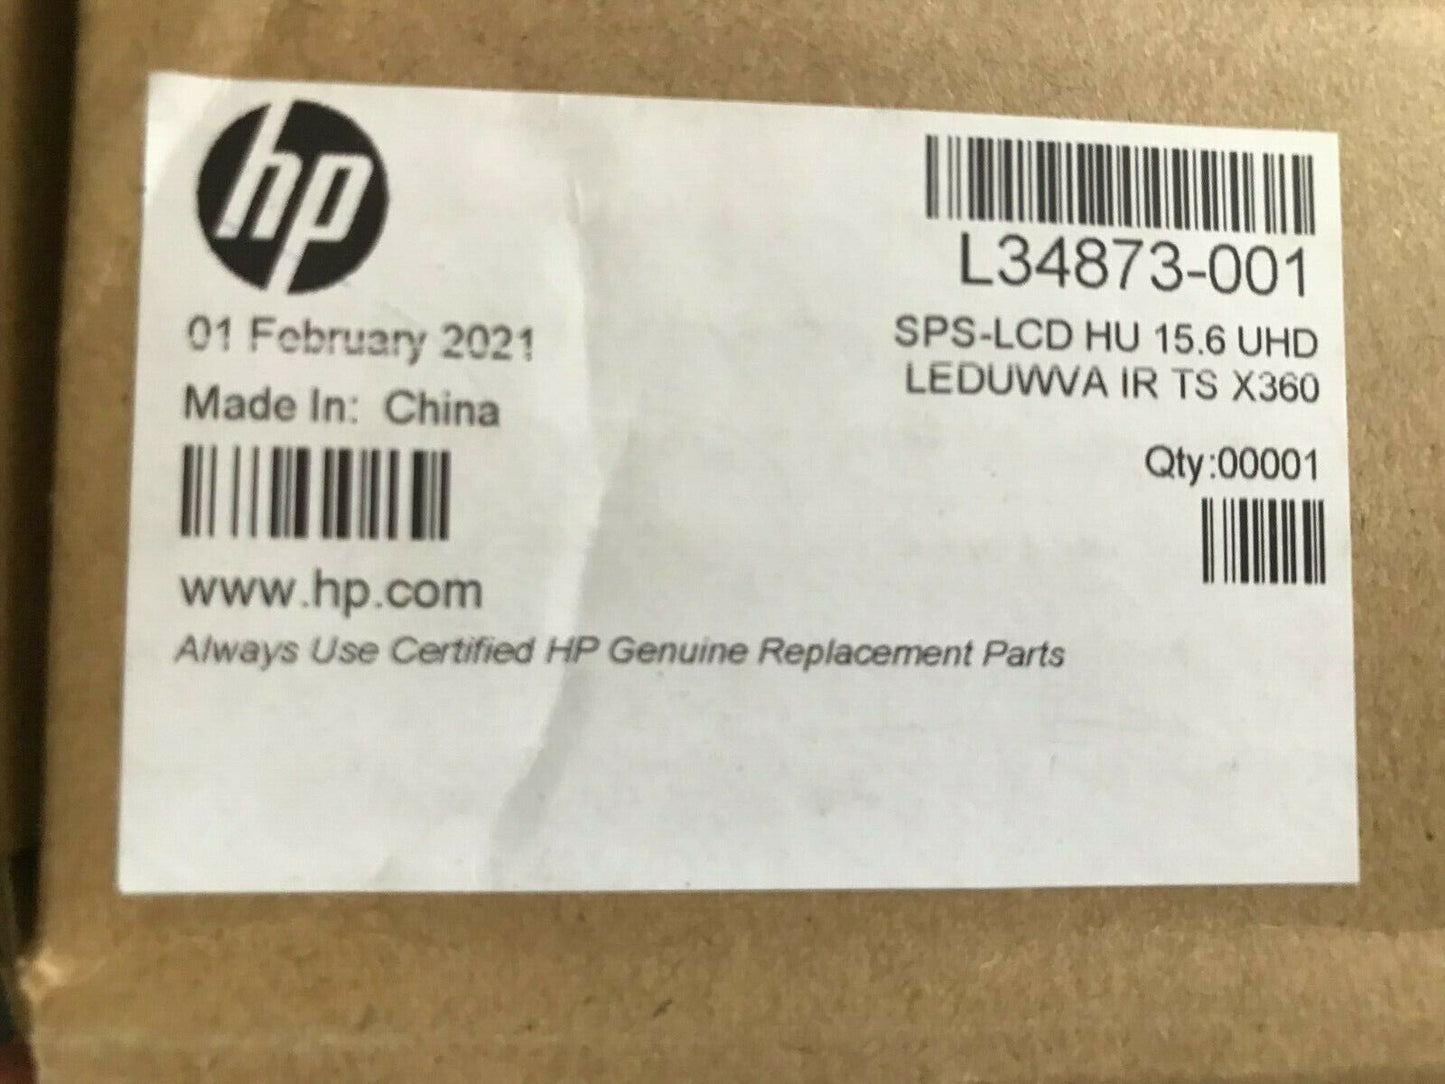 New Genuine HP L34873-001 LCD HU 15.6 UHD LEDUWVA IR TS X360 ZBOOK S 360 G5